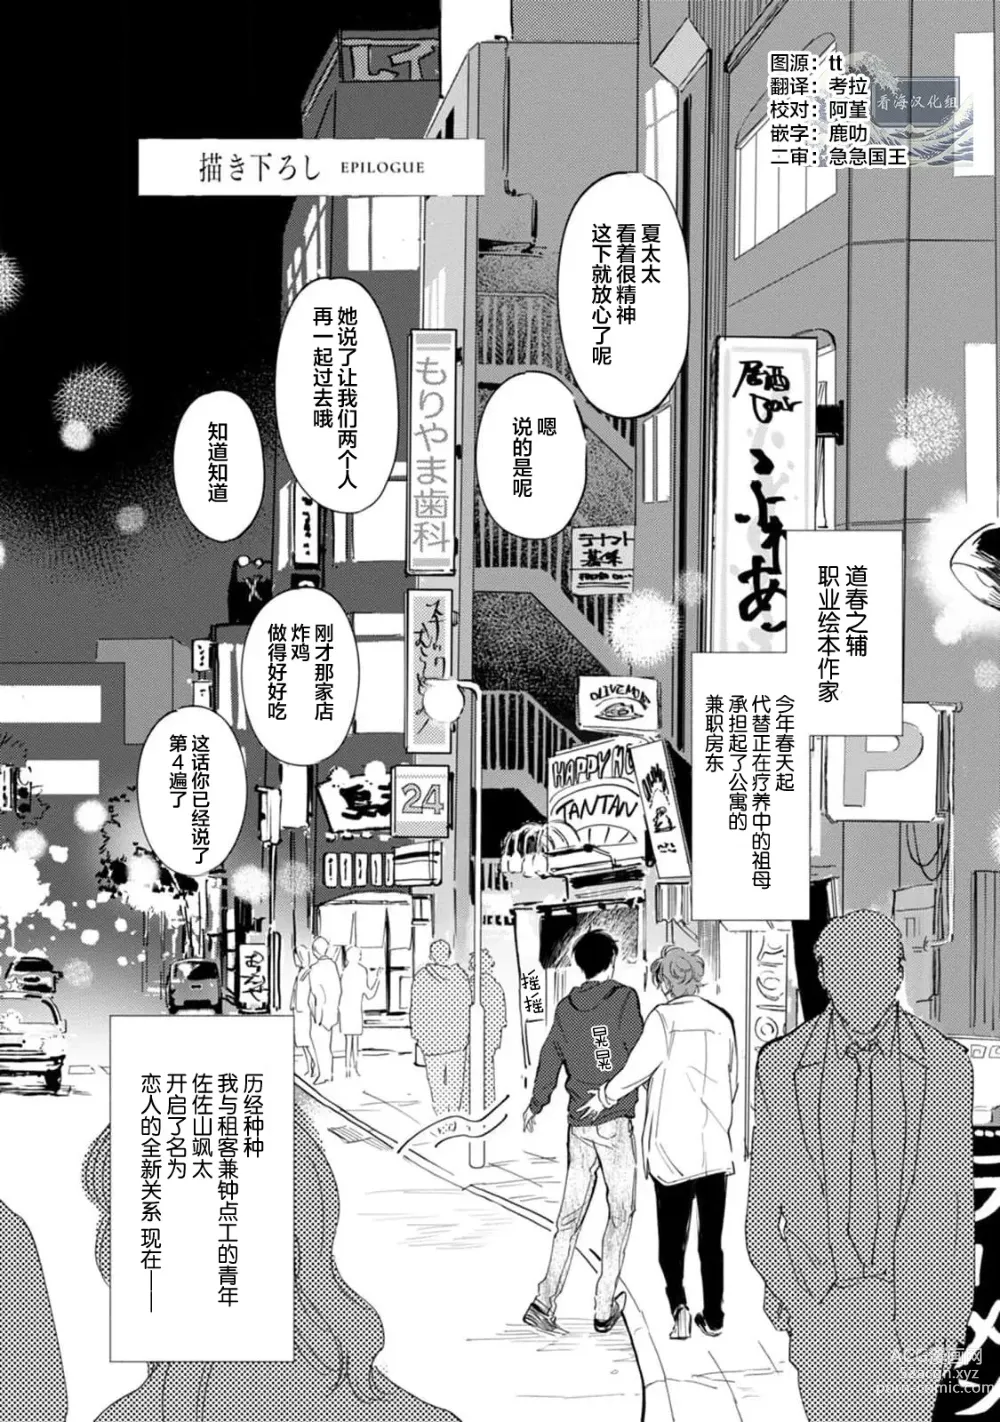 Page 204 of manga 与春为邻